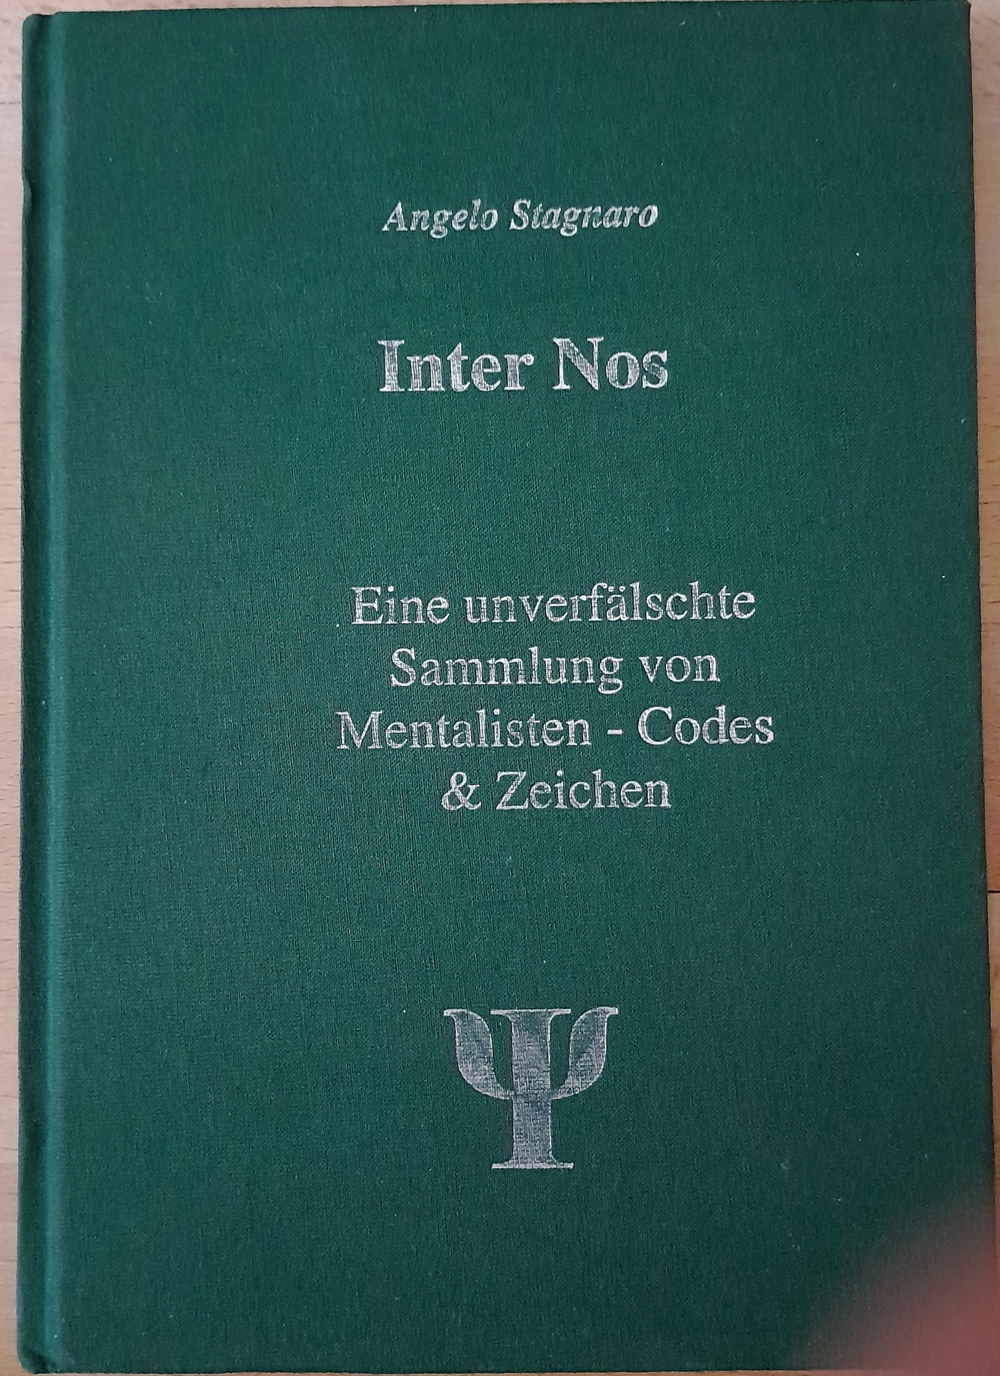 Buch "Inter Nos"